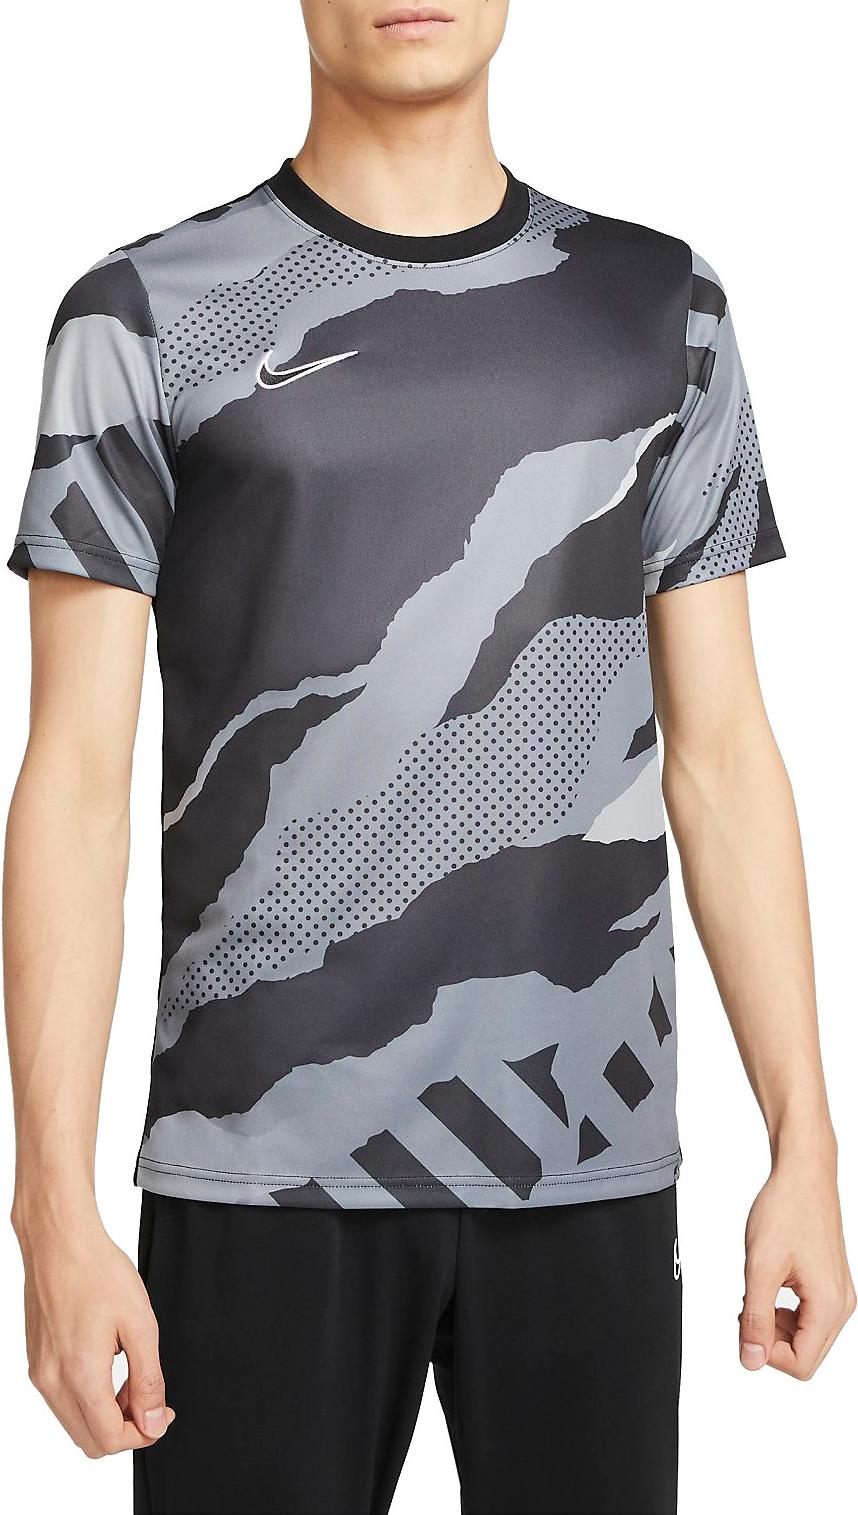 T-shirt Nike DRI-FIT GX TOP SS